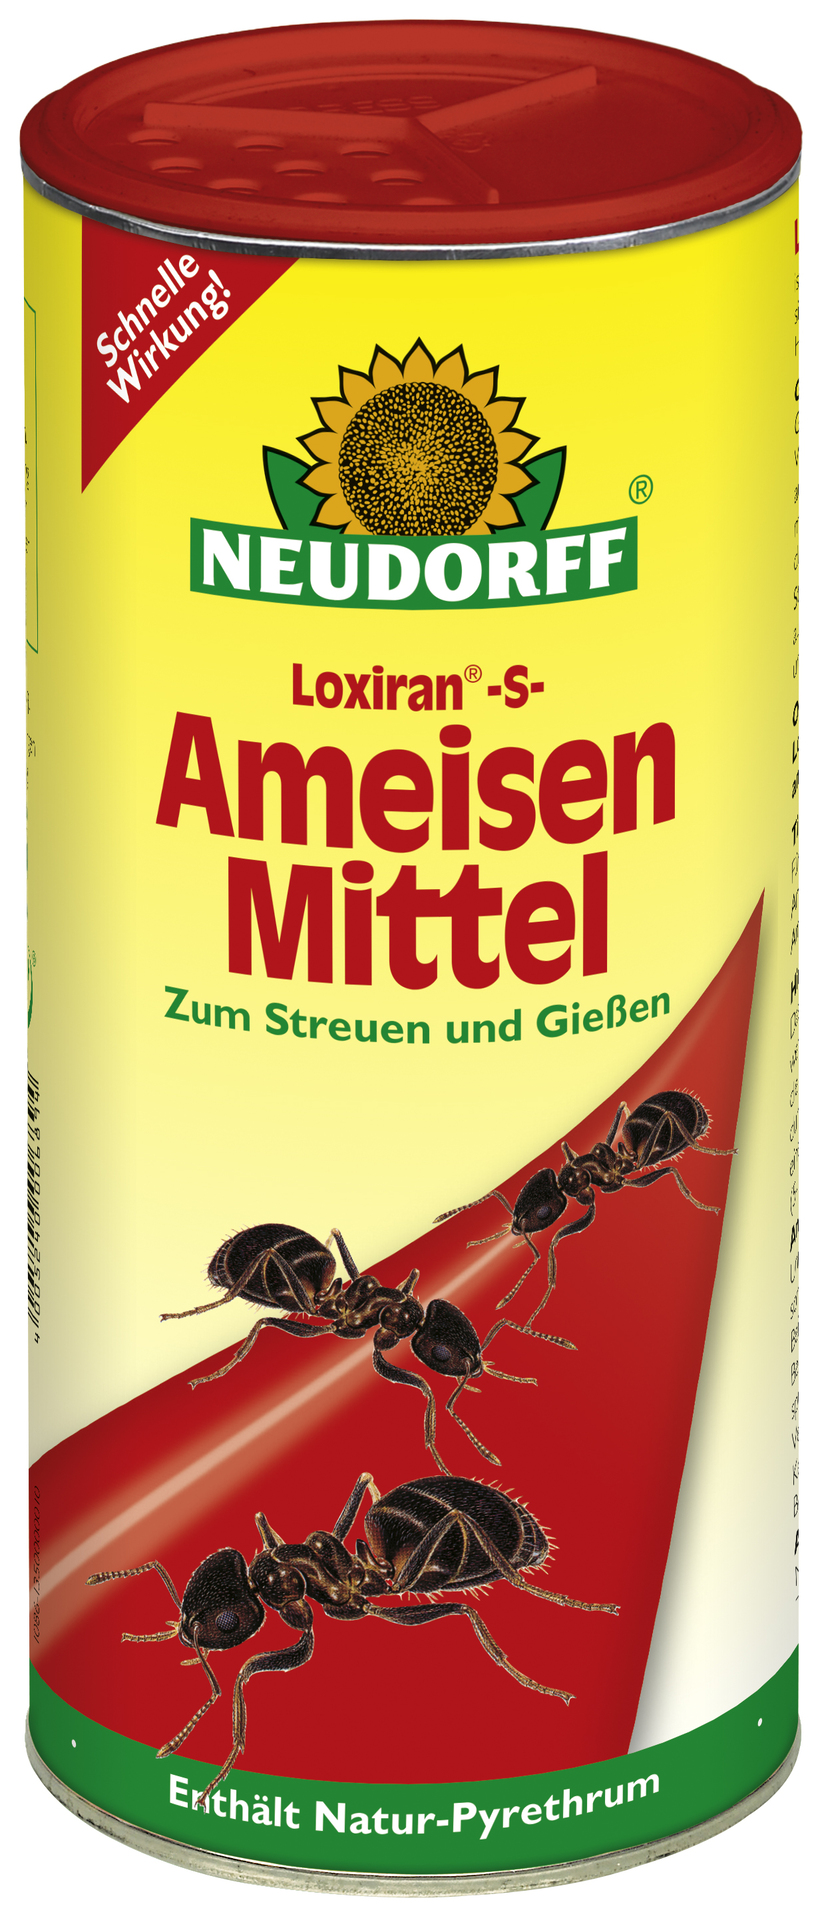 W. Neudorff GmbH KG Loxiran-S-AmeisenMittel